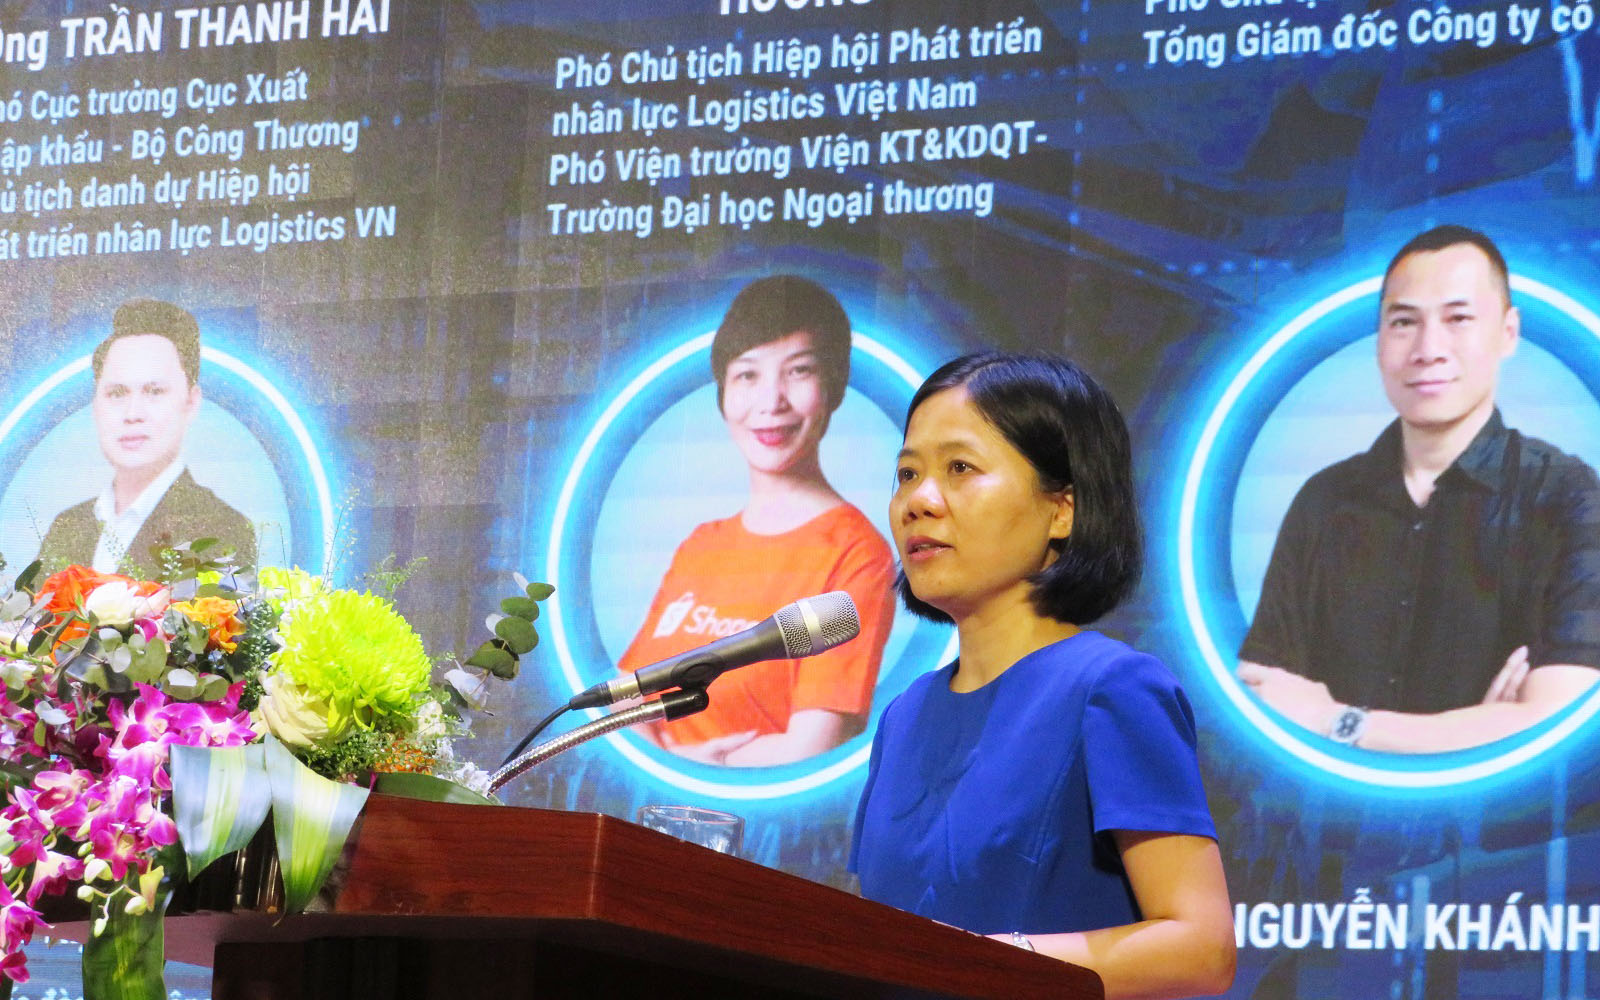 Theo PGS.TS.Trịnh Thị Thu Hương - Phó Chủ tịch VALOMA, kỹ năng ứng dụng công nghệ thông tin là một trong những yêu cầu quan trọng đối với nhân lực logistics trong tình hình mới hiện nay